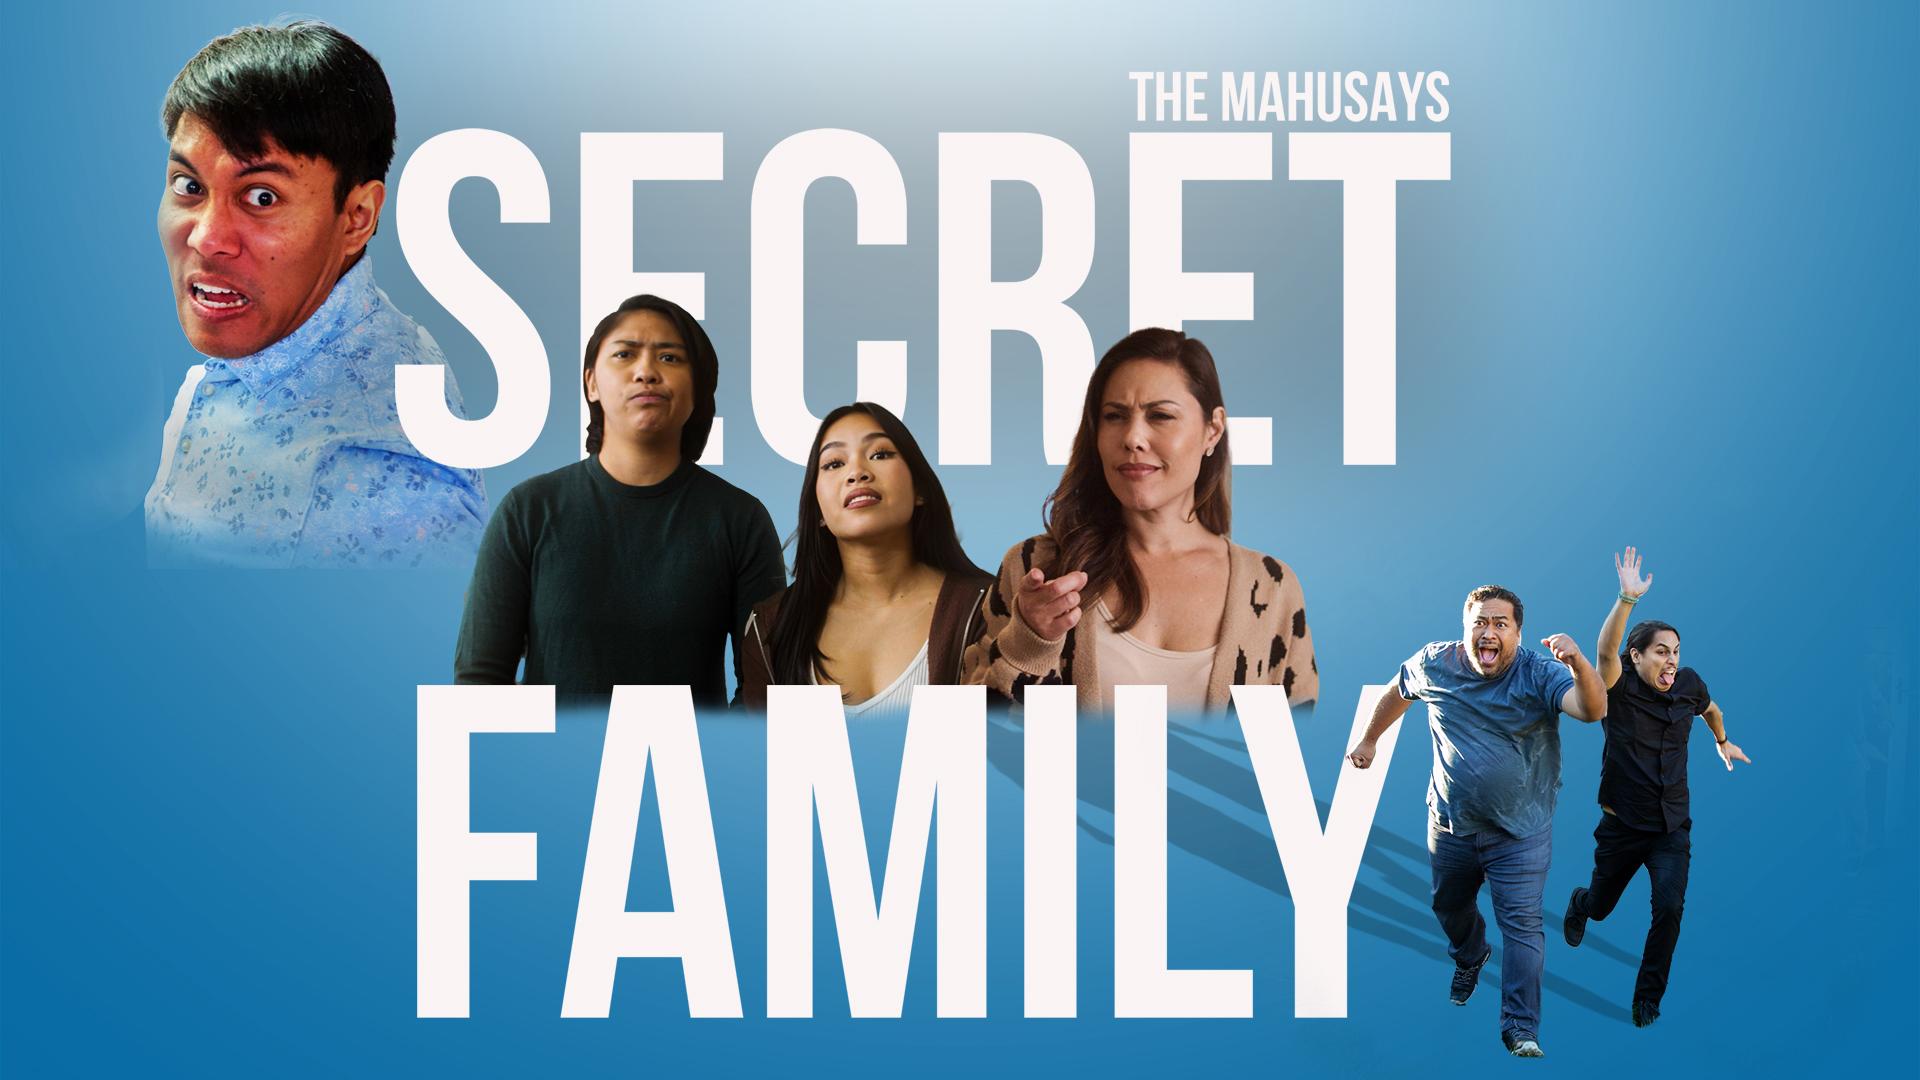 THE MAHUSAYS - SECRET FAMILY